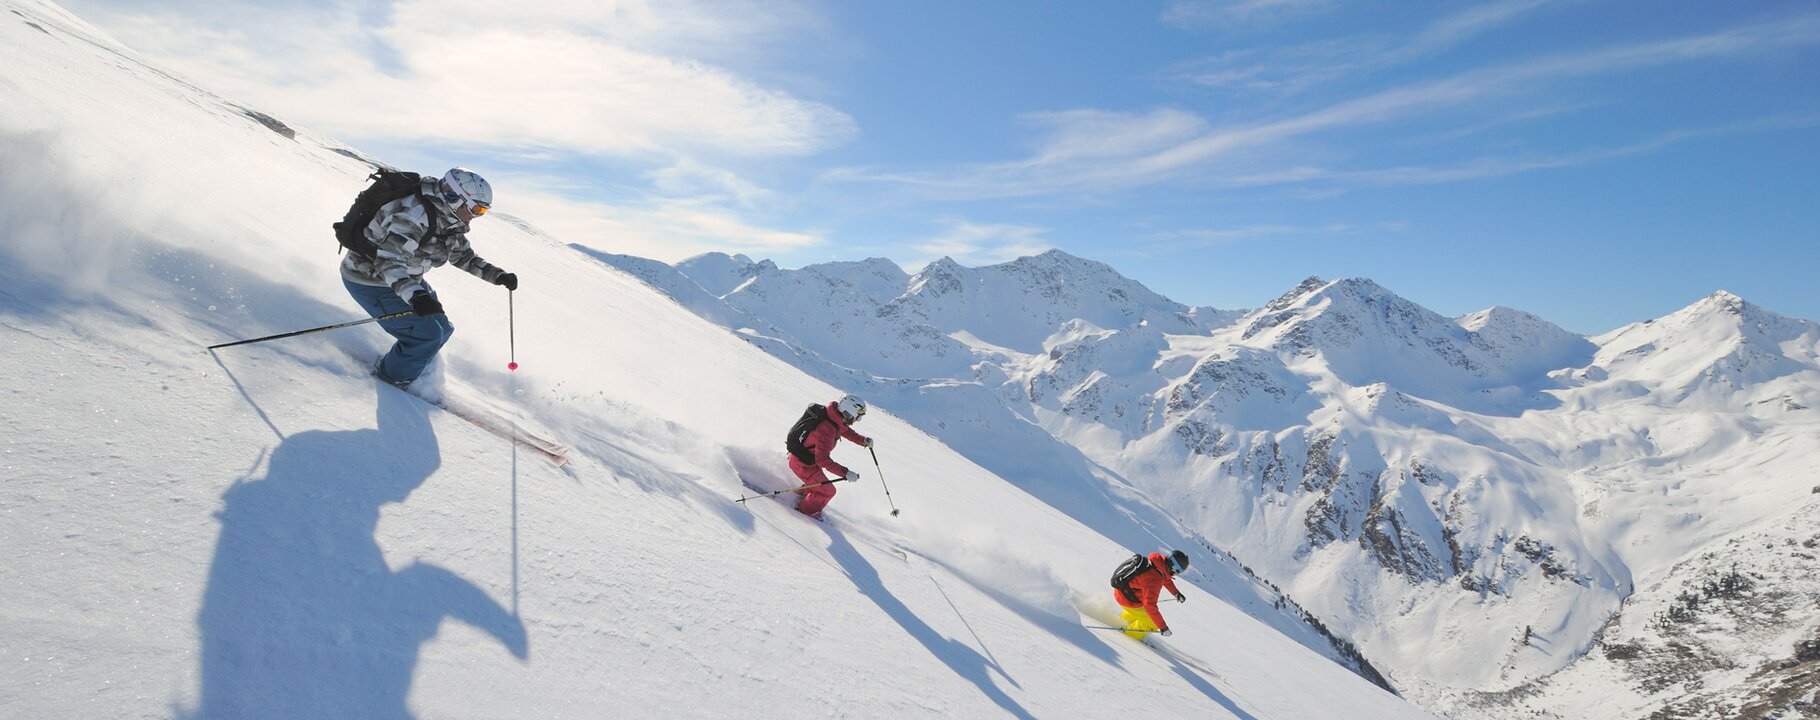 Skifahren in Serfaus-Fiss-Ladis in Tirol bei tollen Wetterbedingungen in Österreich | © Sepp Mallaun